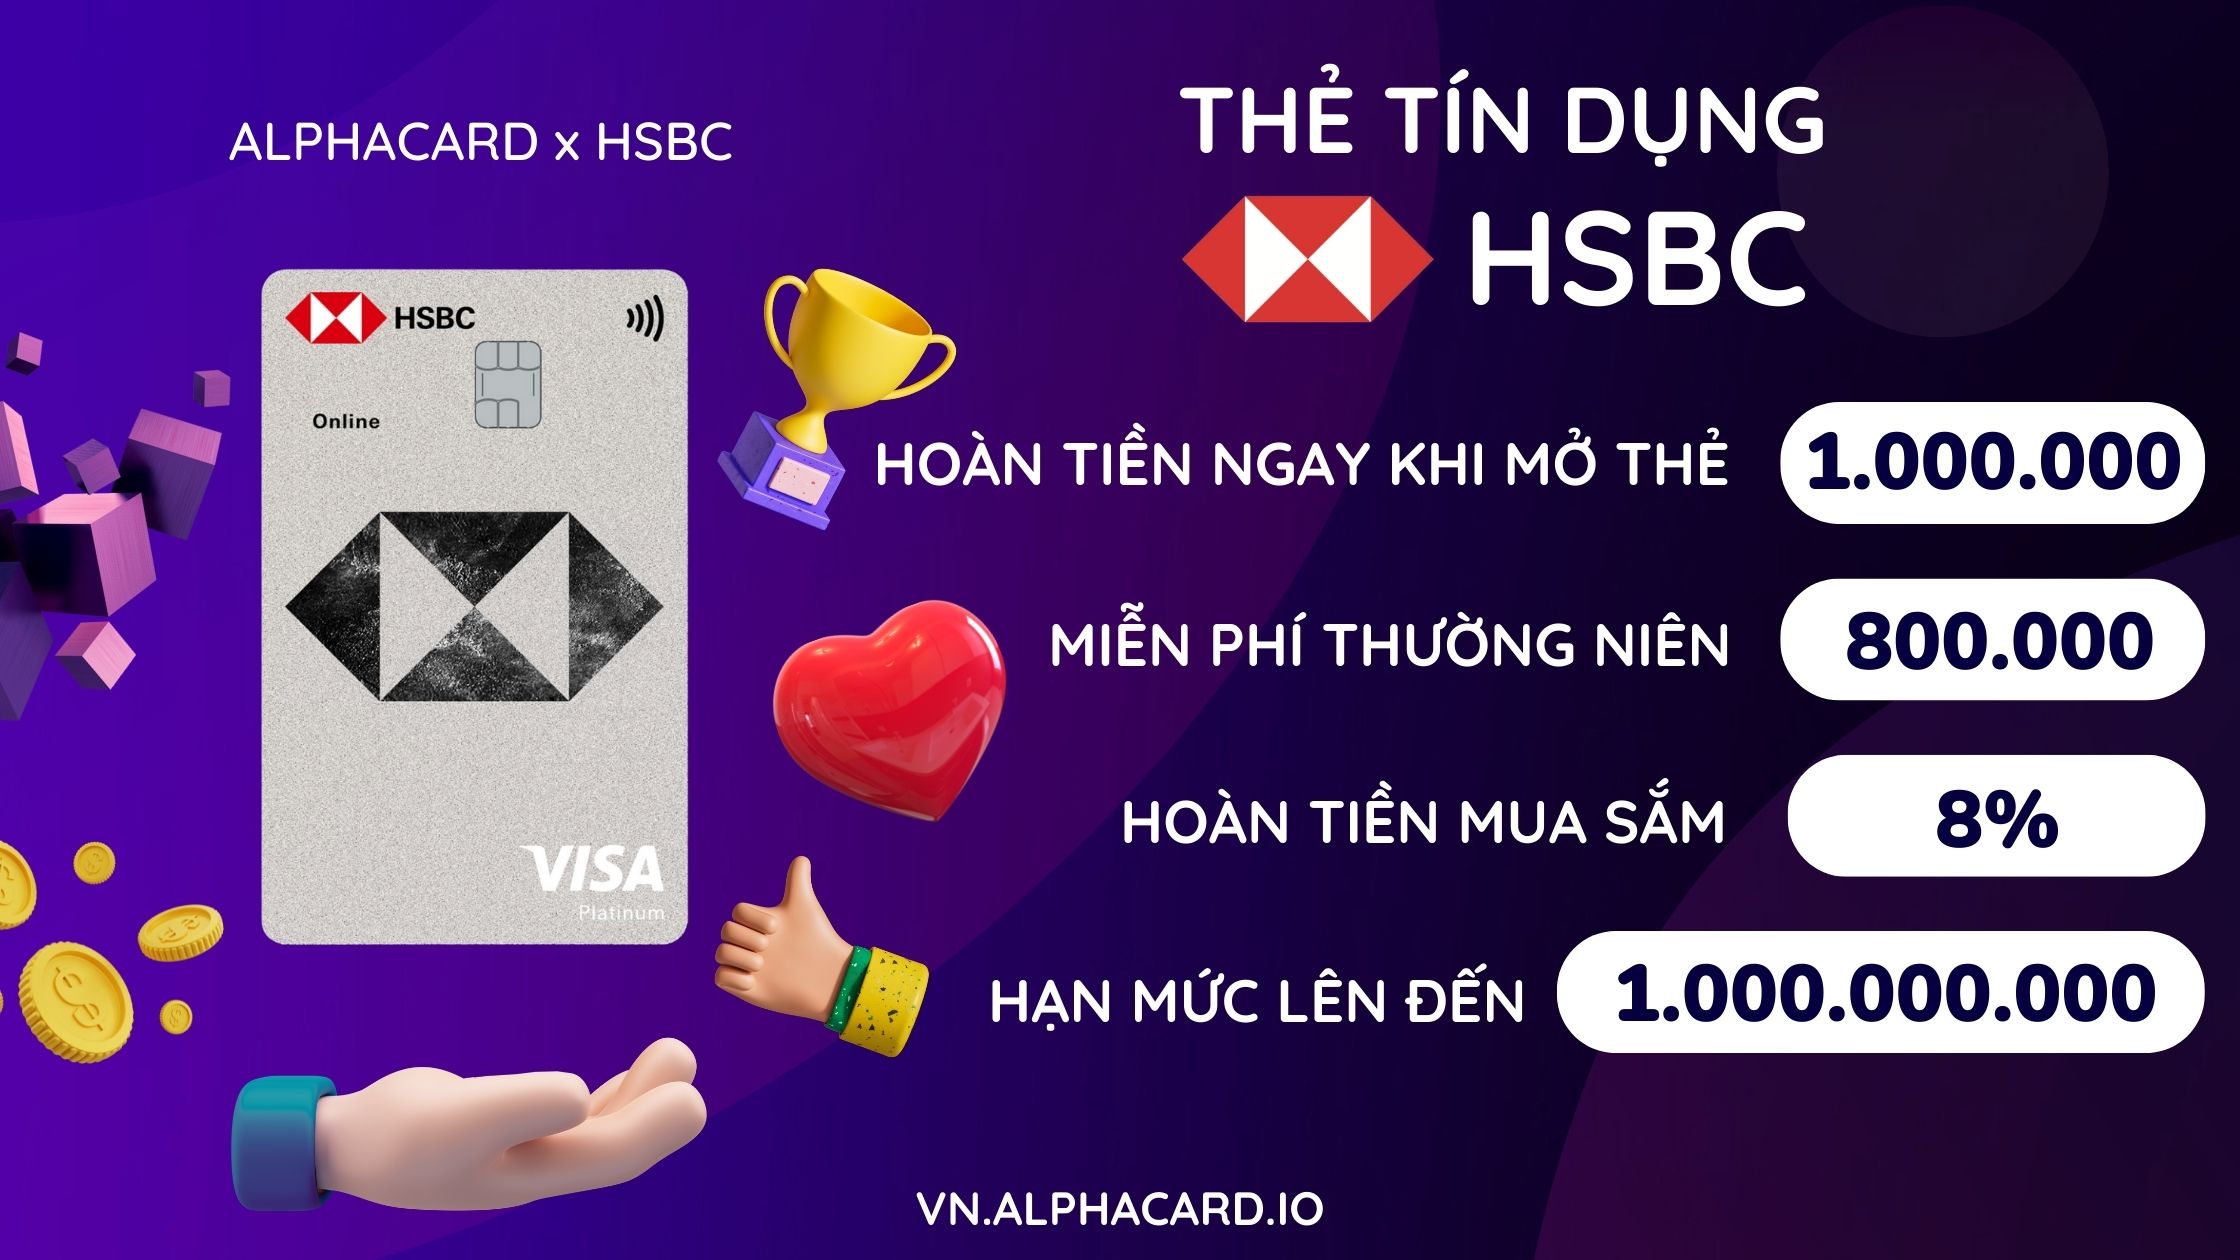 Cách đăng ký Thẻ tín dụng HSBC - Mở thẻ nhận ngay ưu đãi 1.800.000 VND - Hạn mức lên đến 1 tỷ VND - Hoàn tiền mua sắm lên đến 8% -